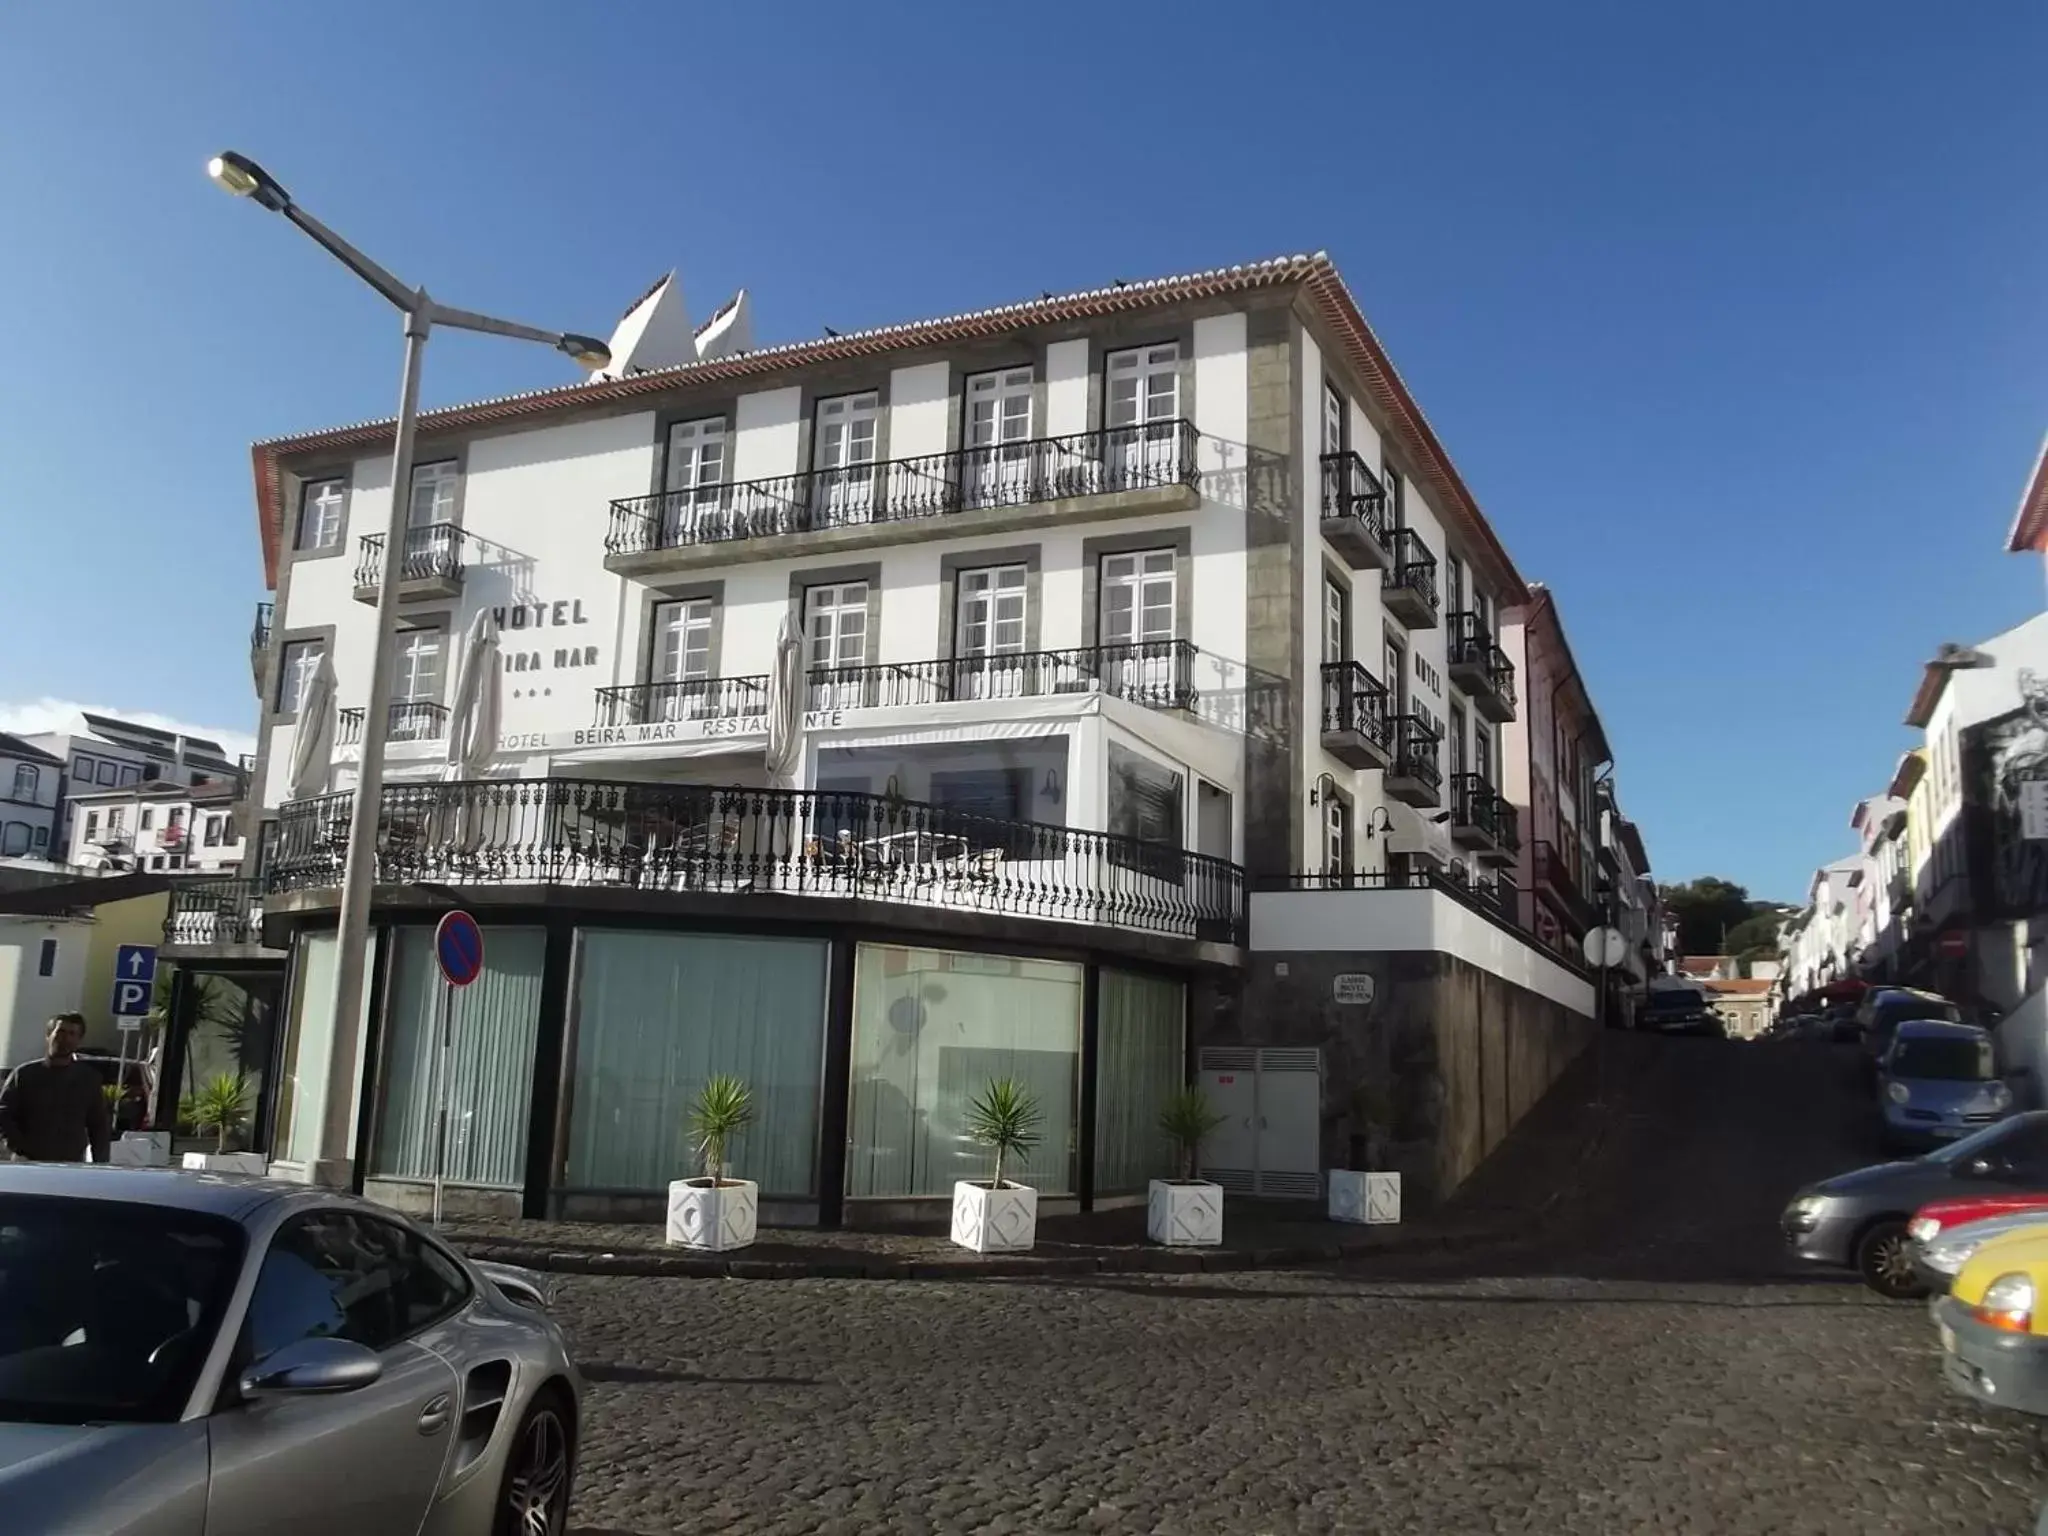 Facade/entrance, Property Building in Hotel Beira Mar